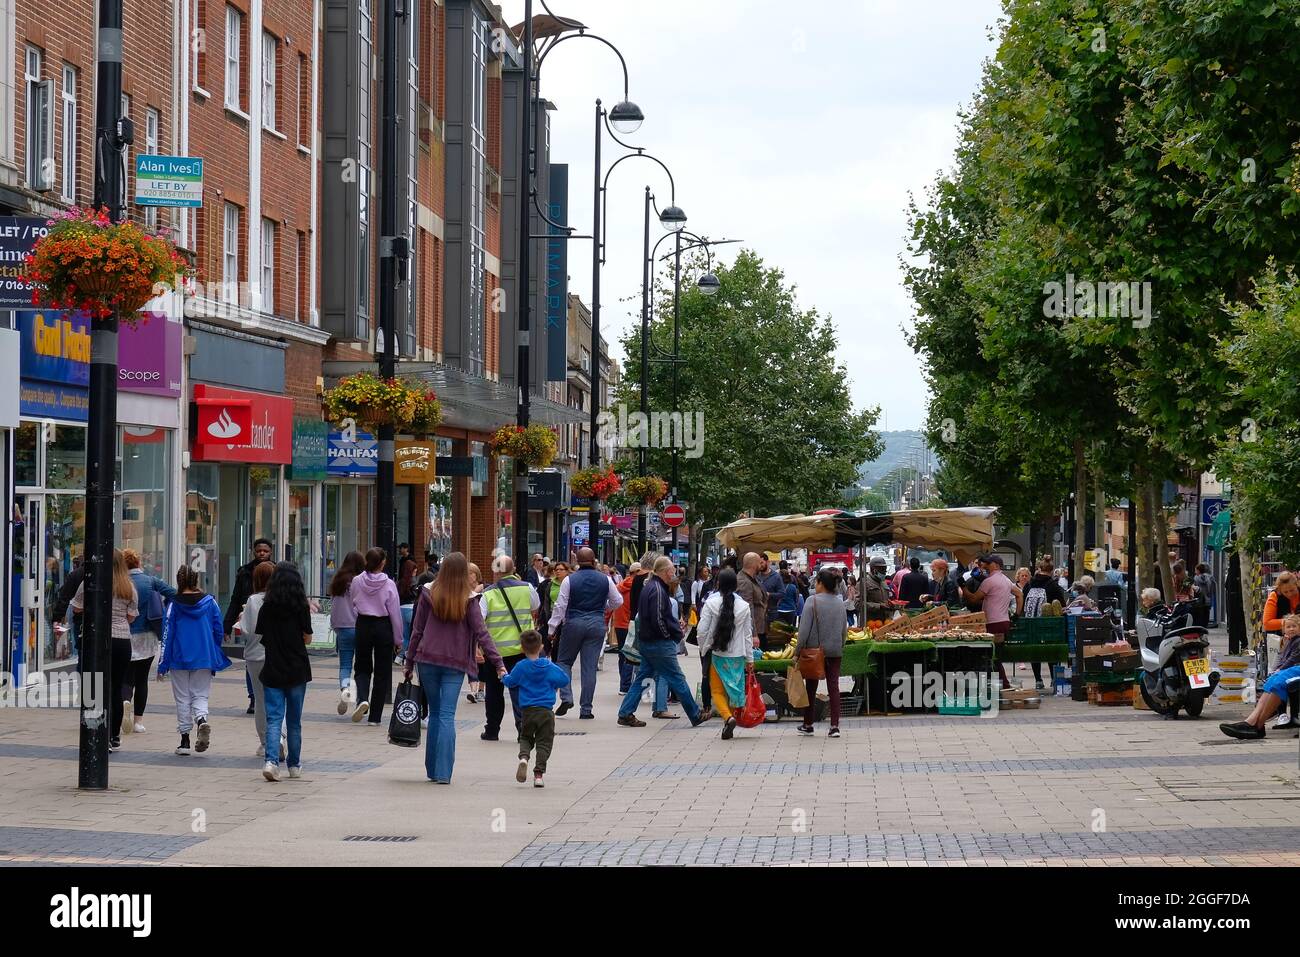 Bexleyheath Kent Inglaterra 08.31.21 personas mezclándose en una zona comercial peatonal al aire libre. Fachadas de tiendas y letreros. Puesto de mercado de verduras. Filas de t Foto de stock